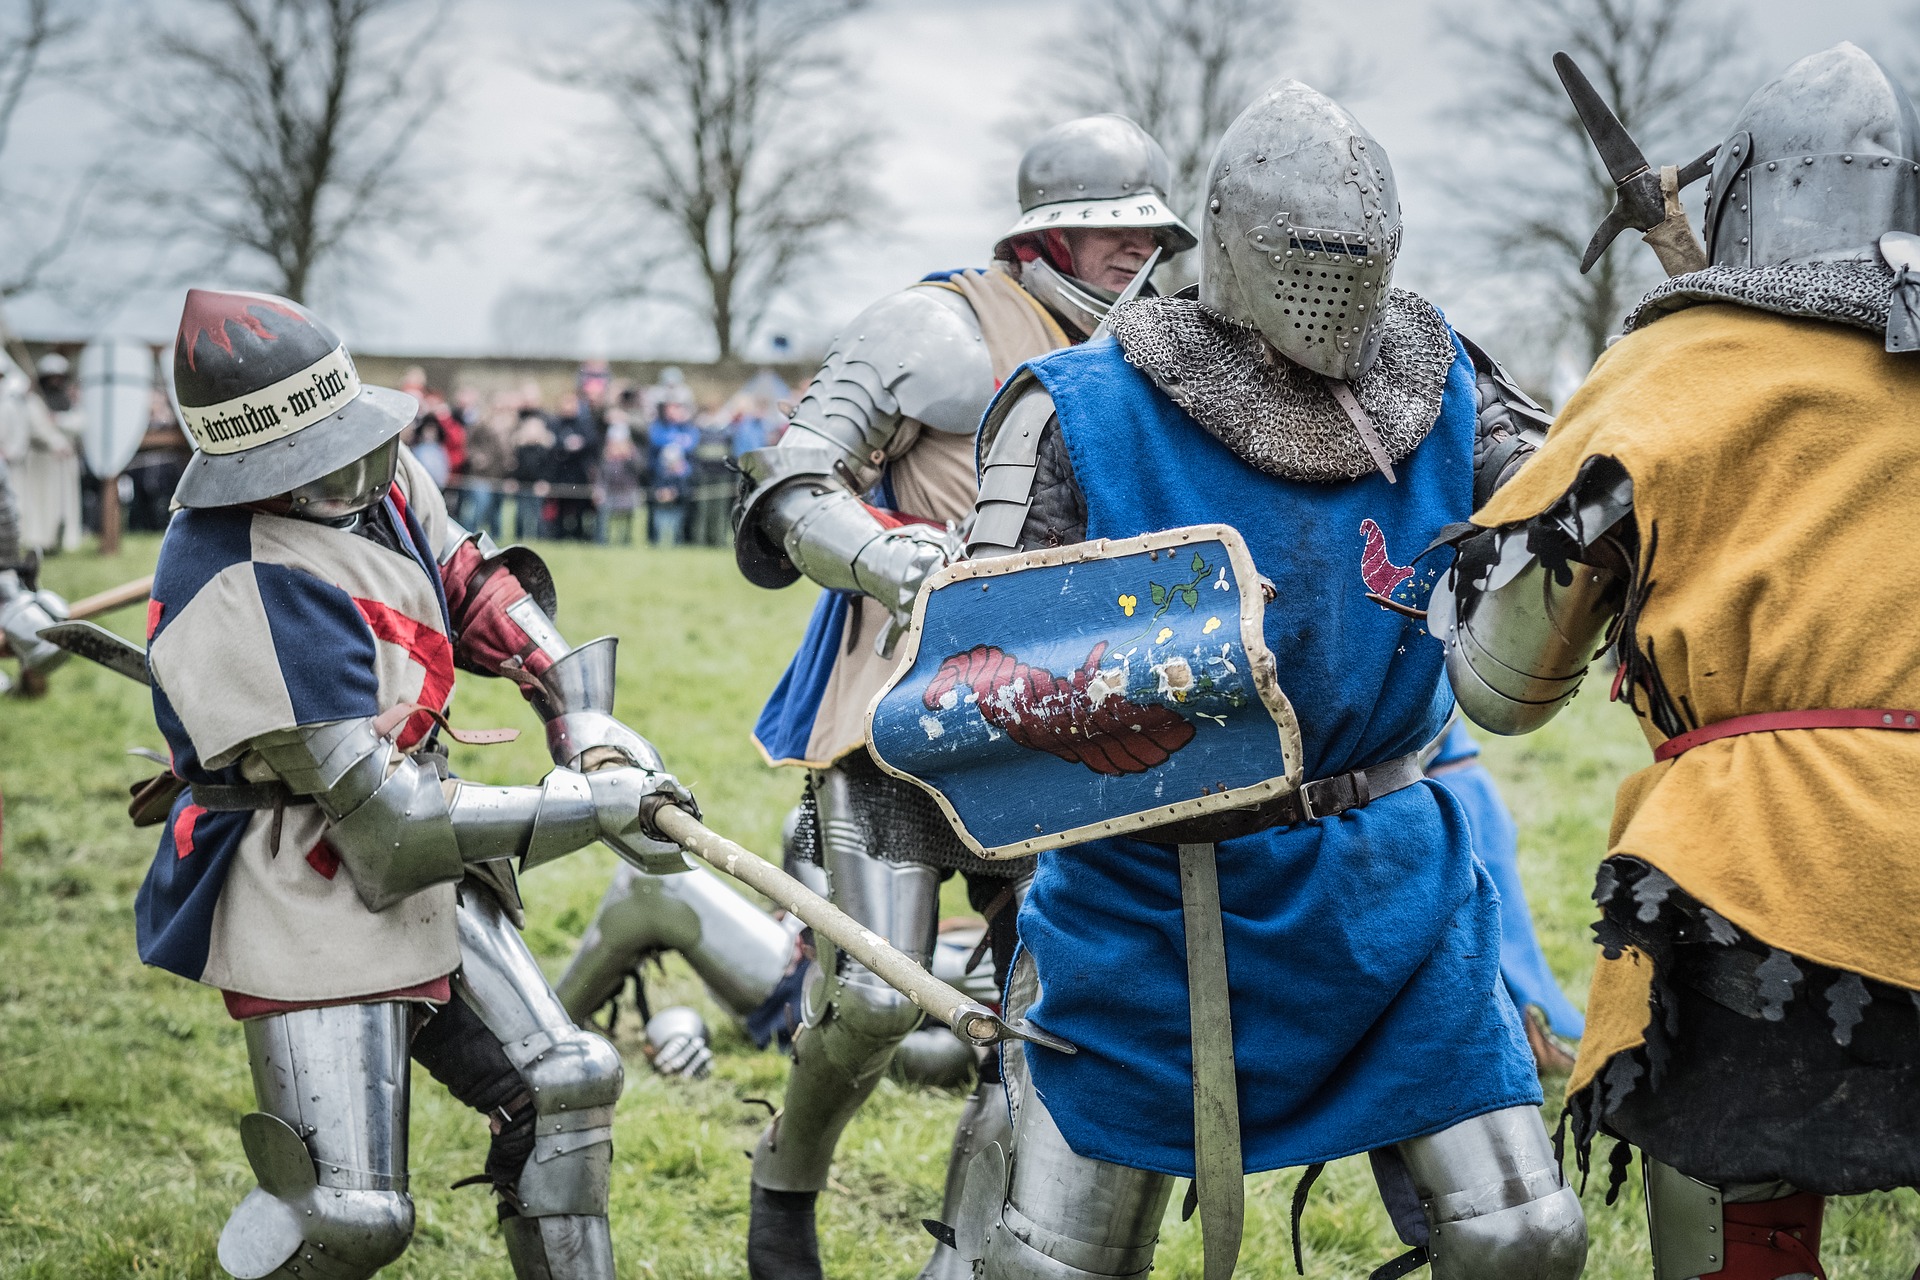 Medieval battle re-enactment showing four participants in mock battle.